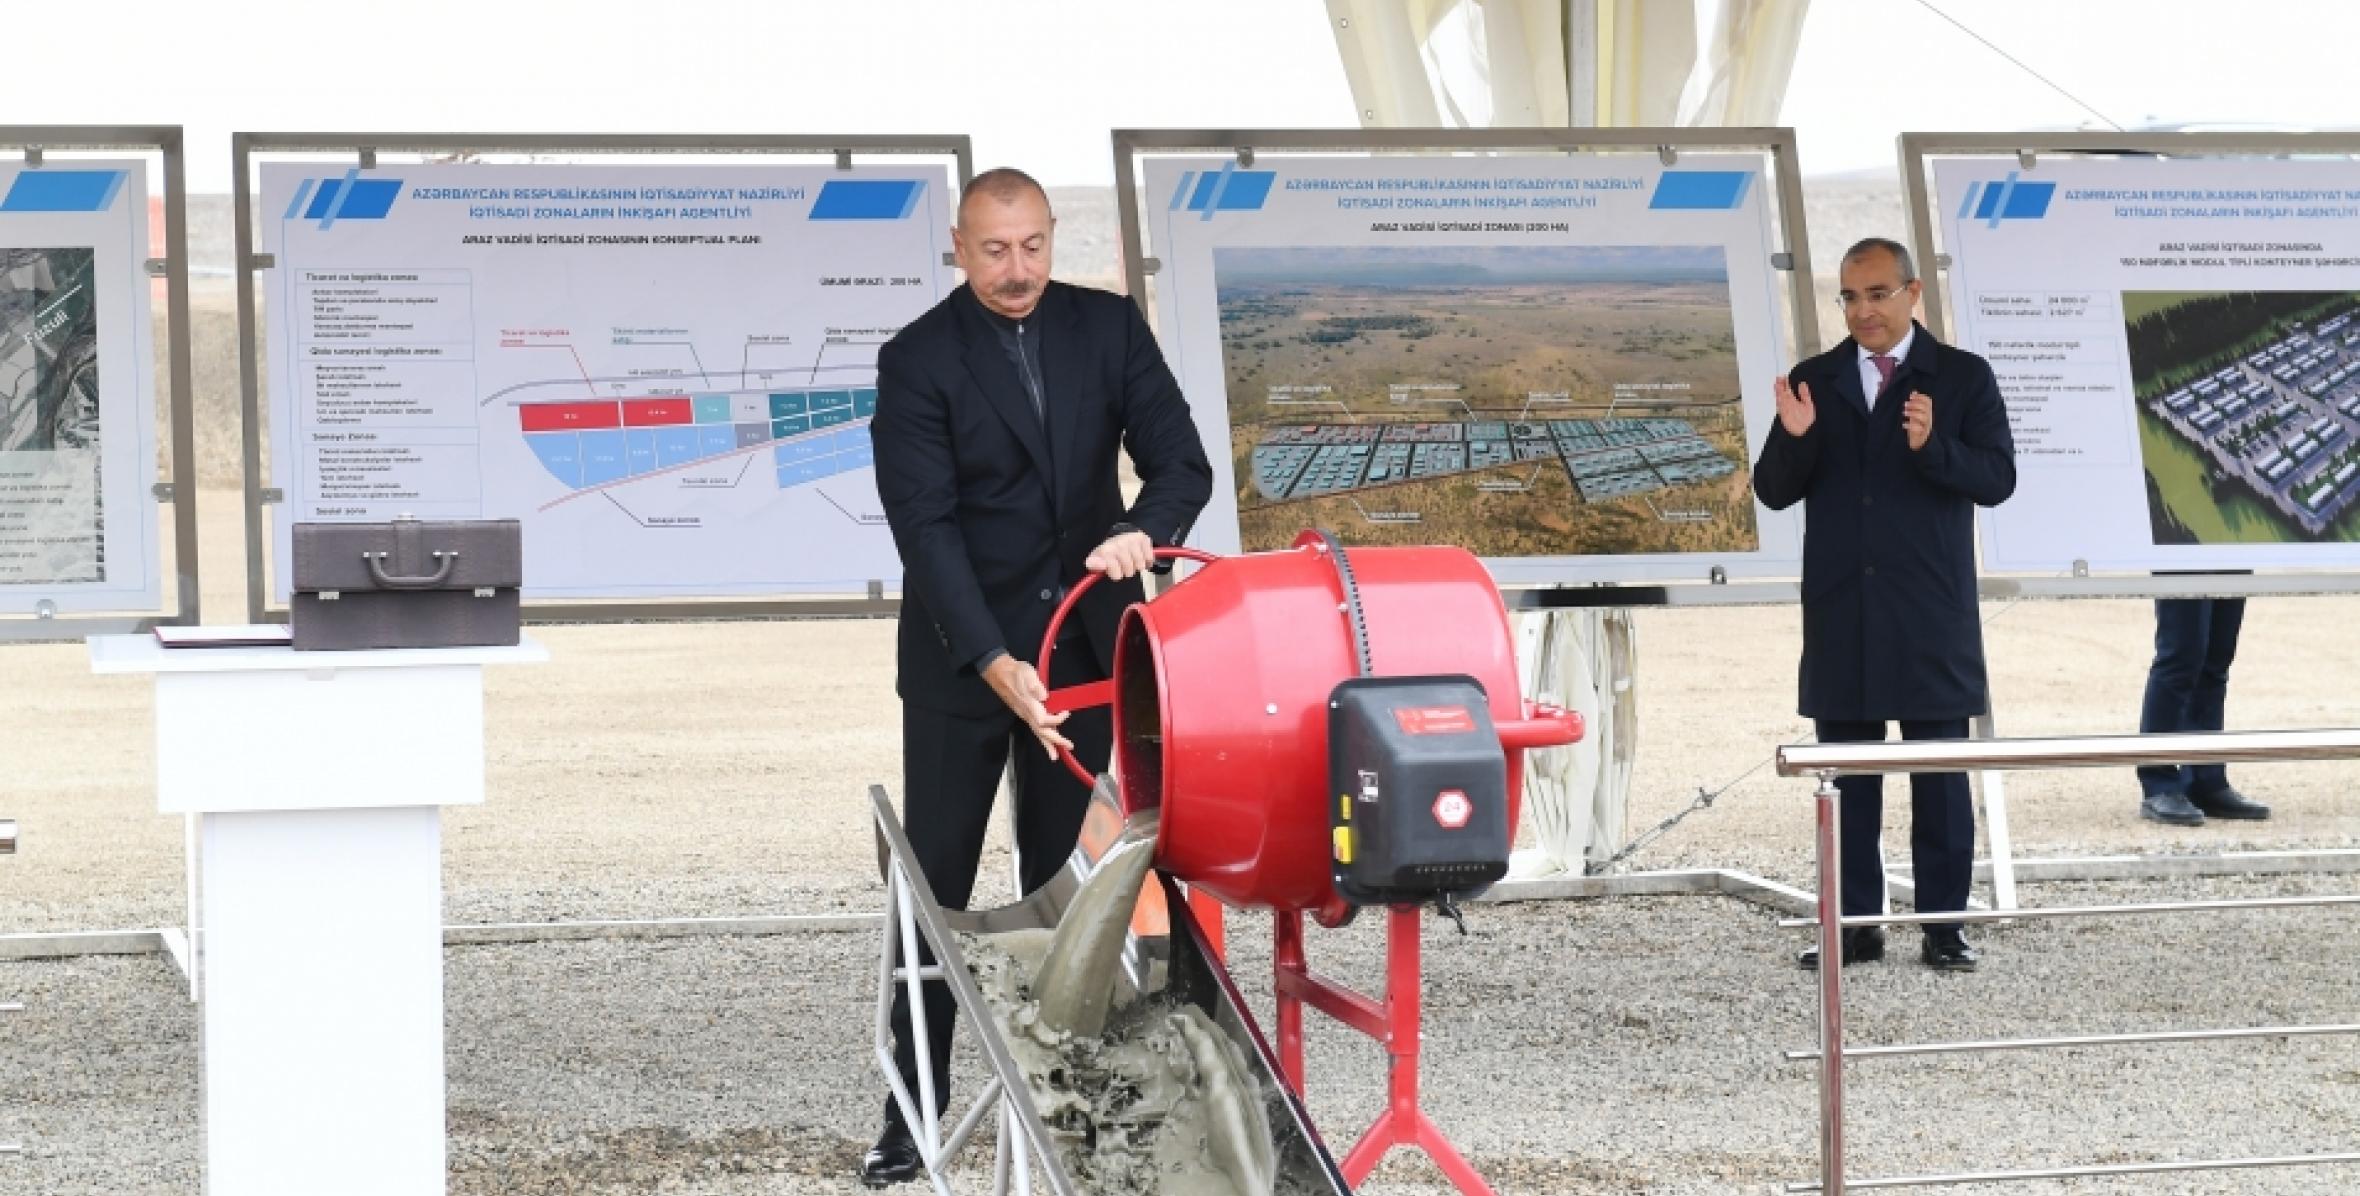 Ильхам Алиев заложил фундамент промышленного парка «Экономическая зона Аразская долина» в Восточно-Зангезурском экономическом районе